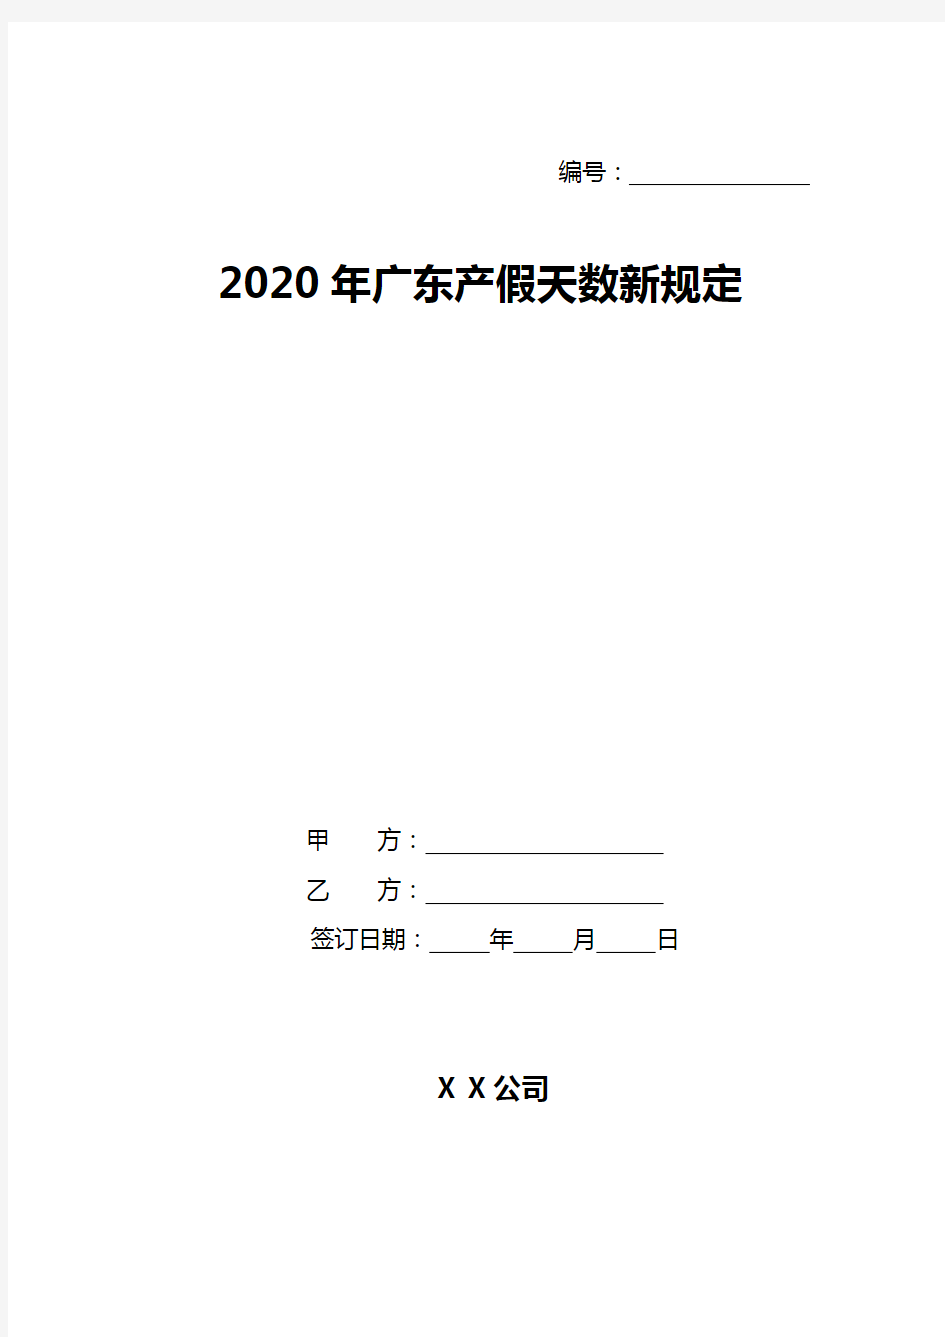 2020年广东产假天数新规定